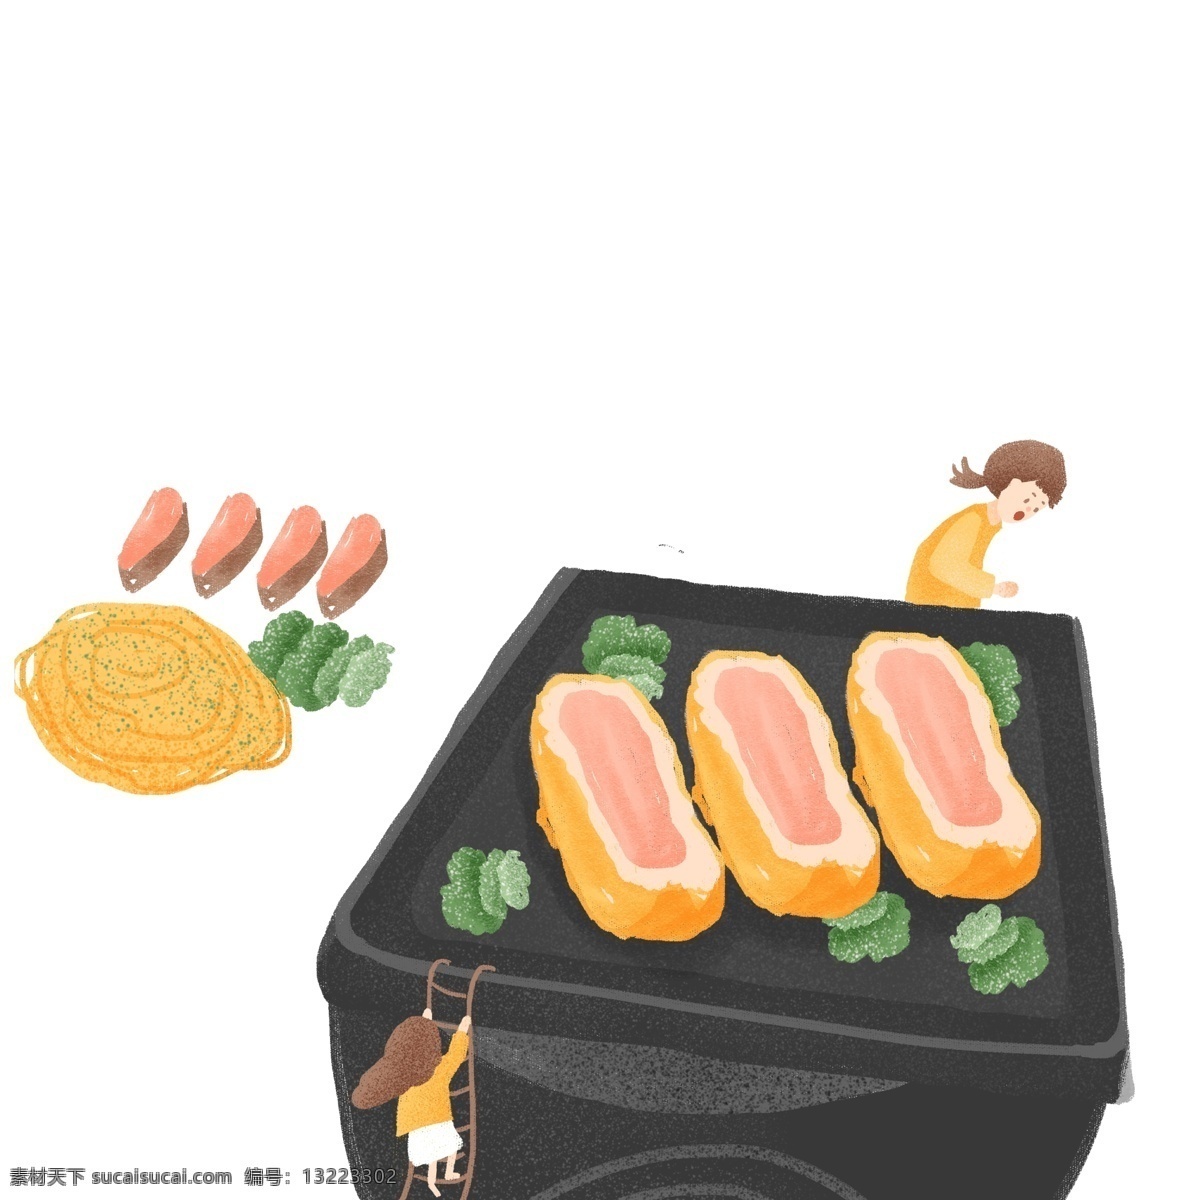 卡通 手绘 美食 寿司 元素 食物 日本食物